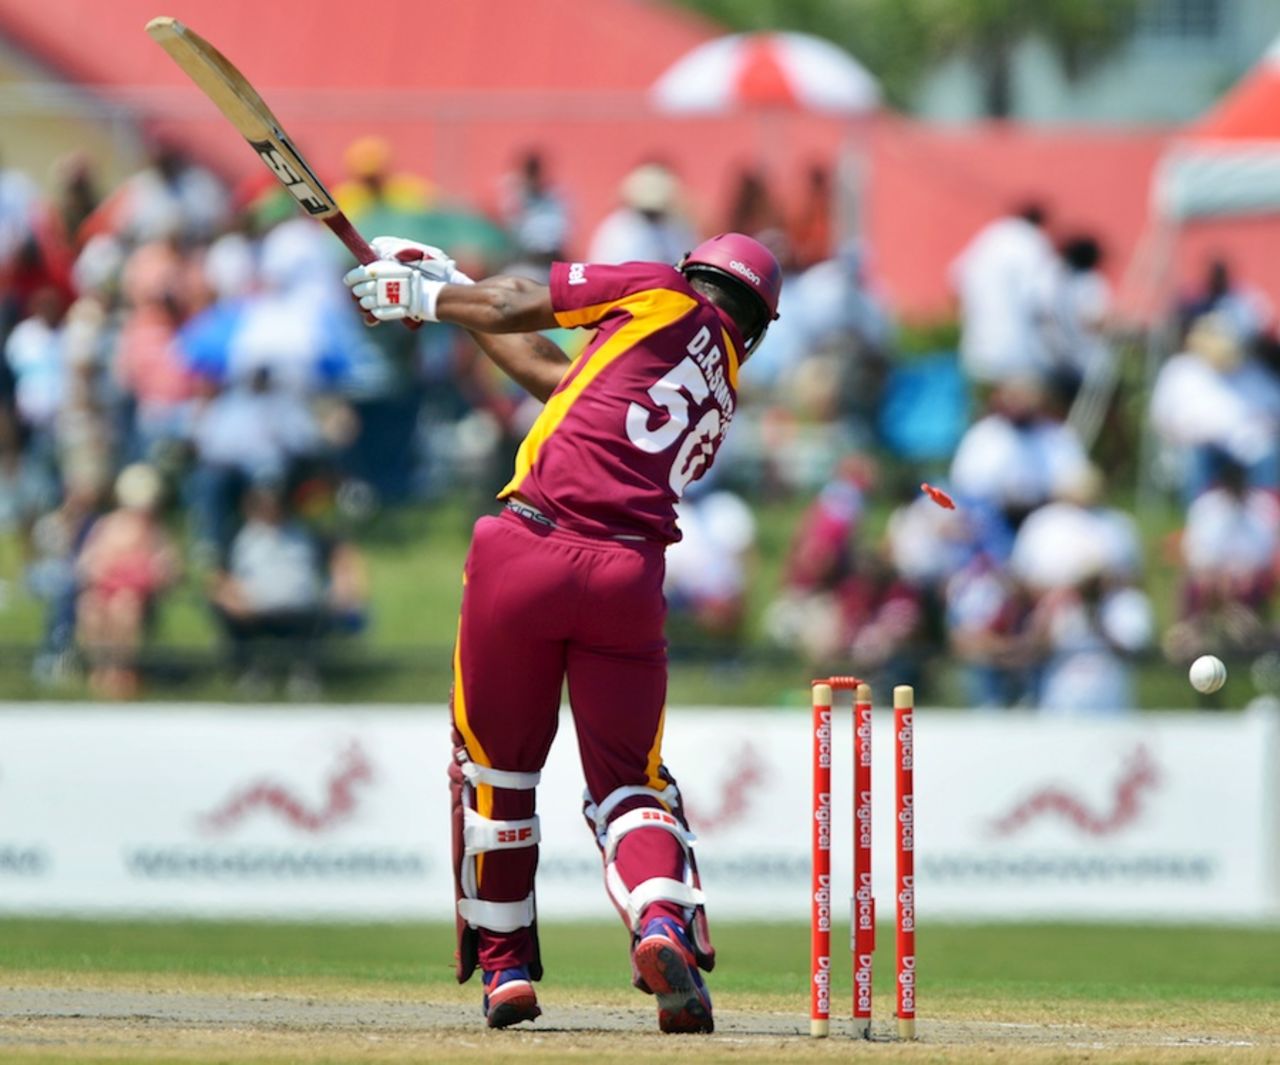 Dwayne Smith was bowled by Doug Bracewell, West Indies v New Zealand, 1st Twenty20, Florida, June 30, 2012